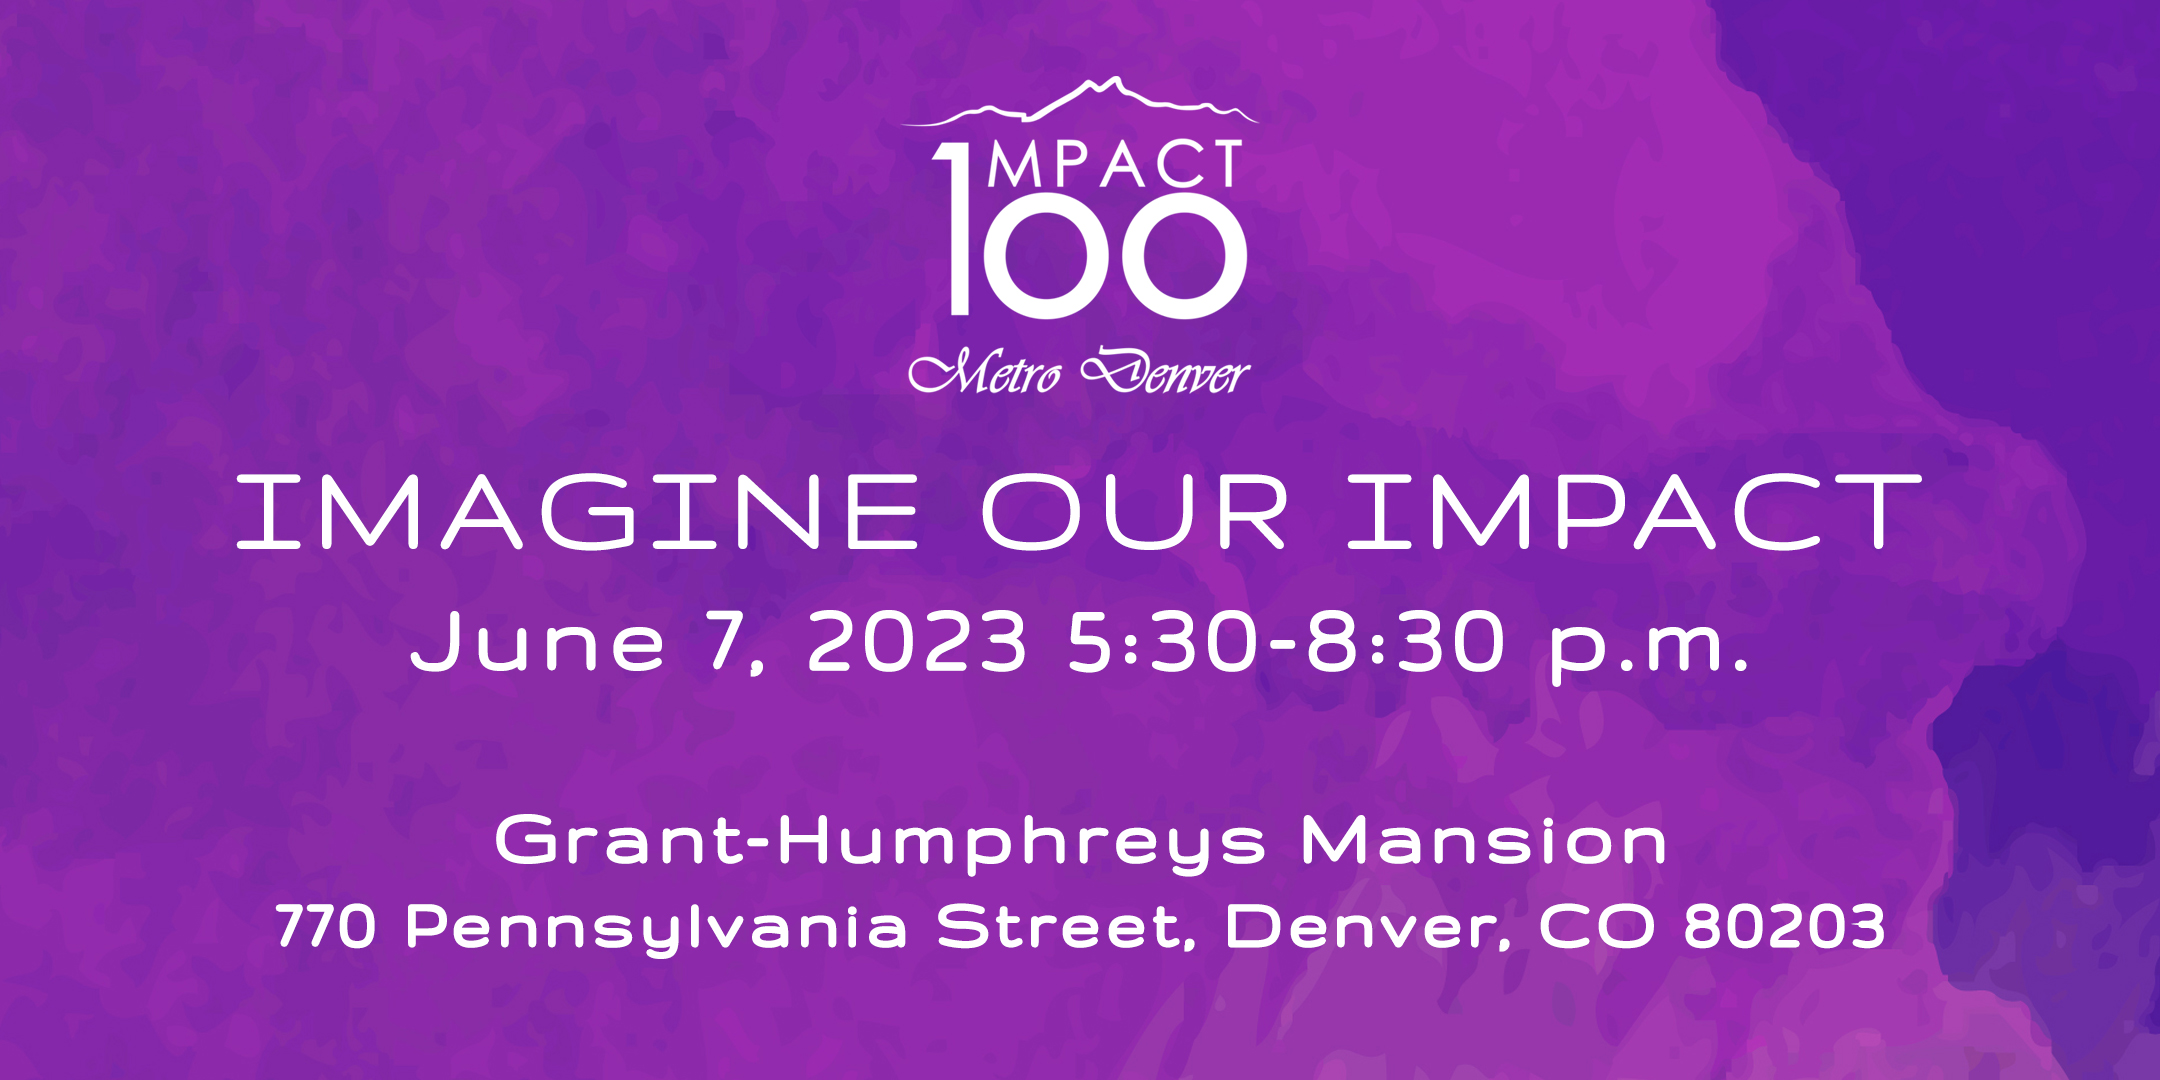 Imagine our Impact invite